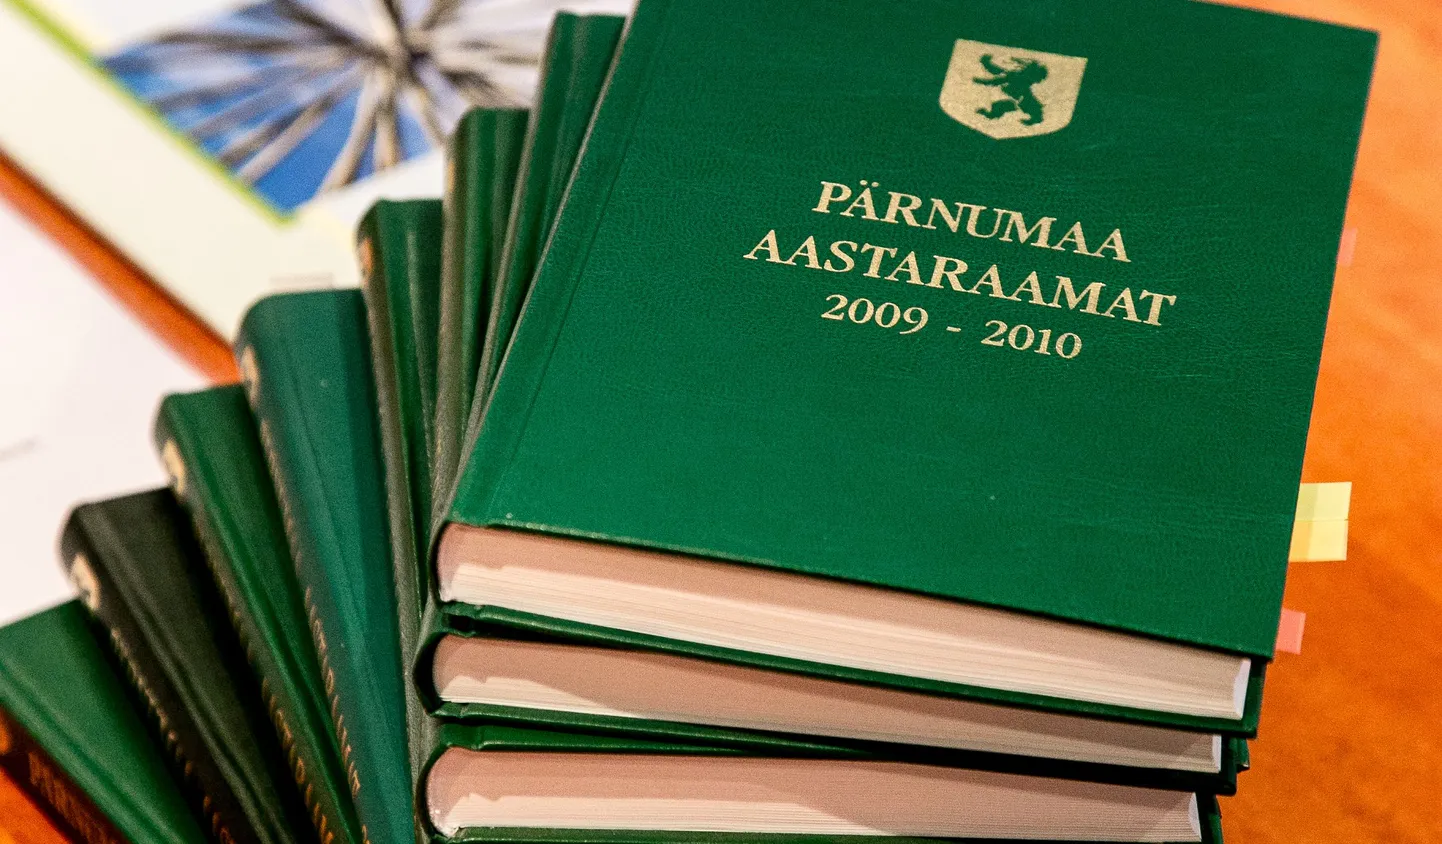 Pärnu maavalitsuses esitleti järjekordset Pärnumaa aastaraamatut.